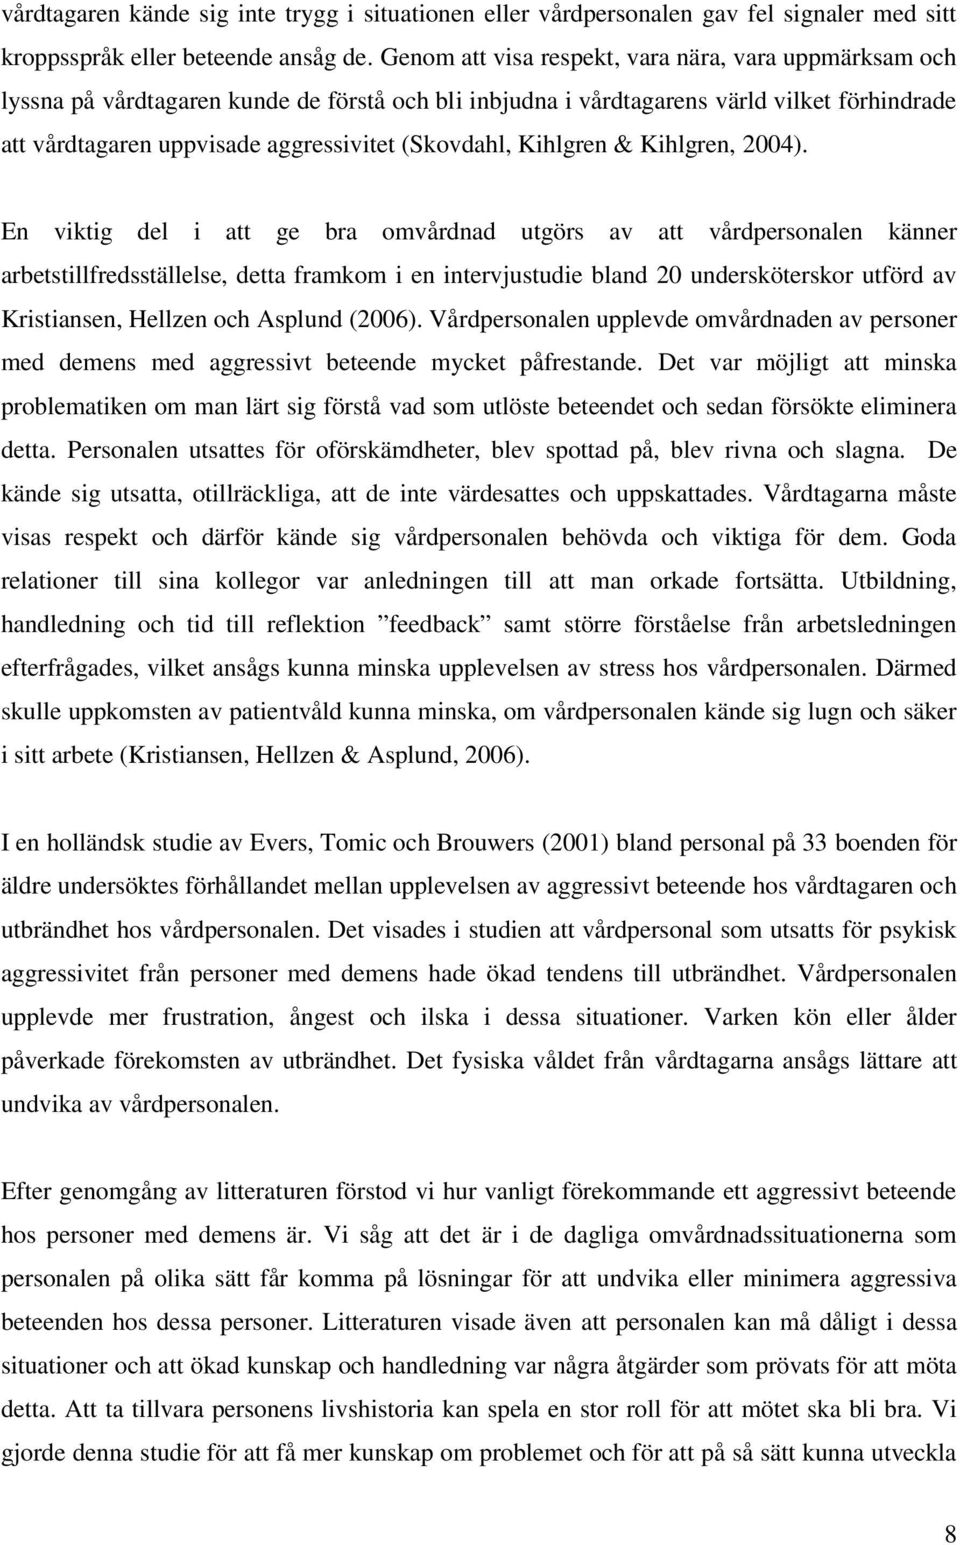 (Skovdahl, Kihlgren & Kihlgren, 2004).